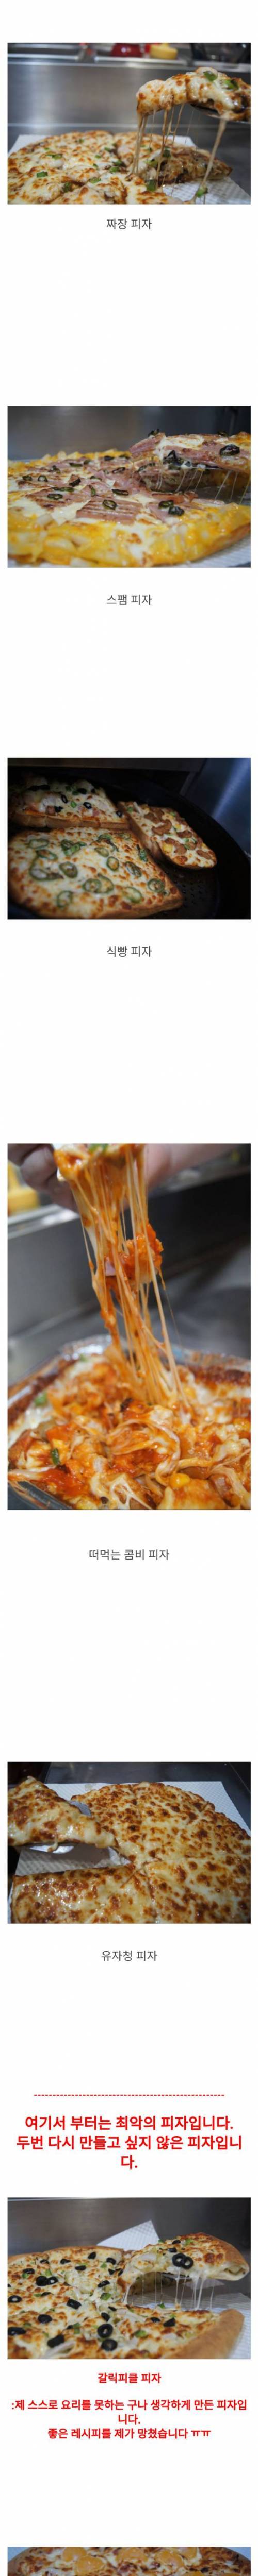 [스압] 특이한 피자 많이 만드는 펨코인